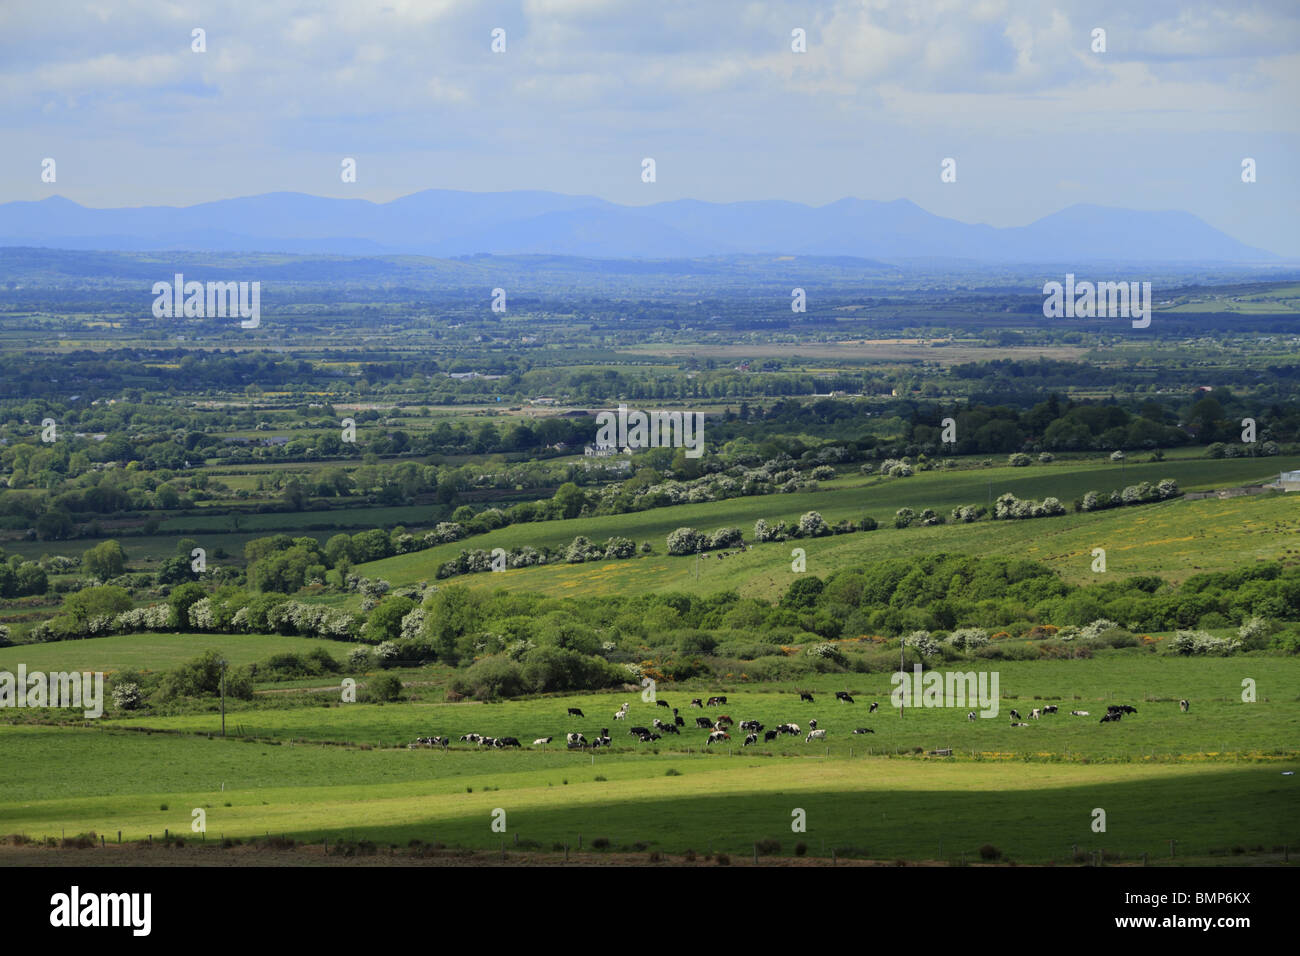 En regardant vers le sud sur la ville de Castleisland vers les Macgillycuddy Reeks, la plus haute chaîne de montagnes d'Irlande, dans le comté de Kerry. Banque D'Images